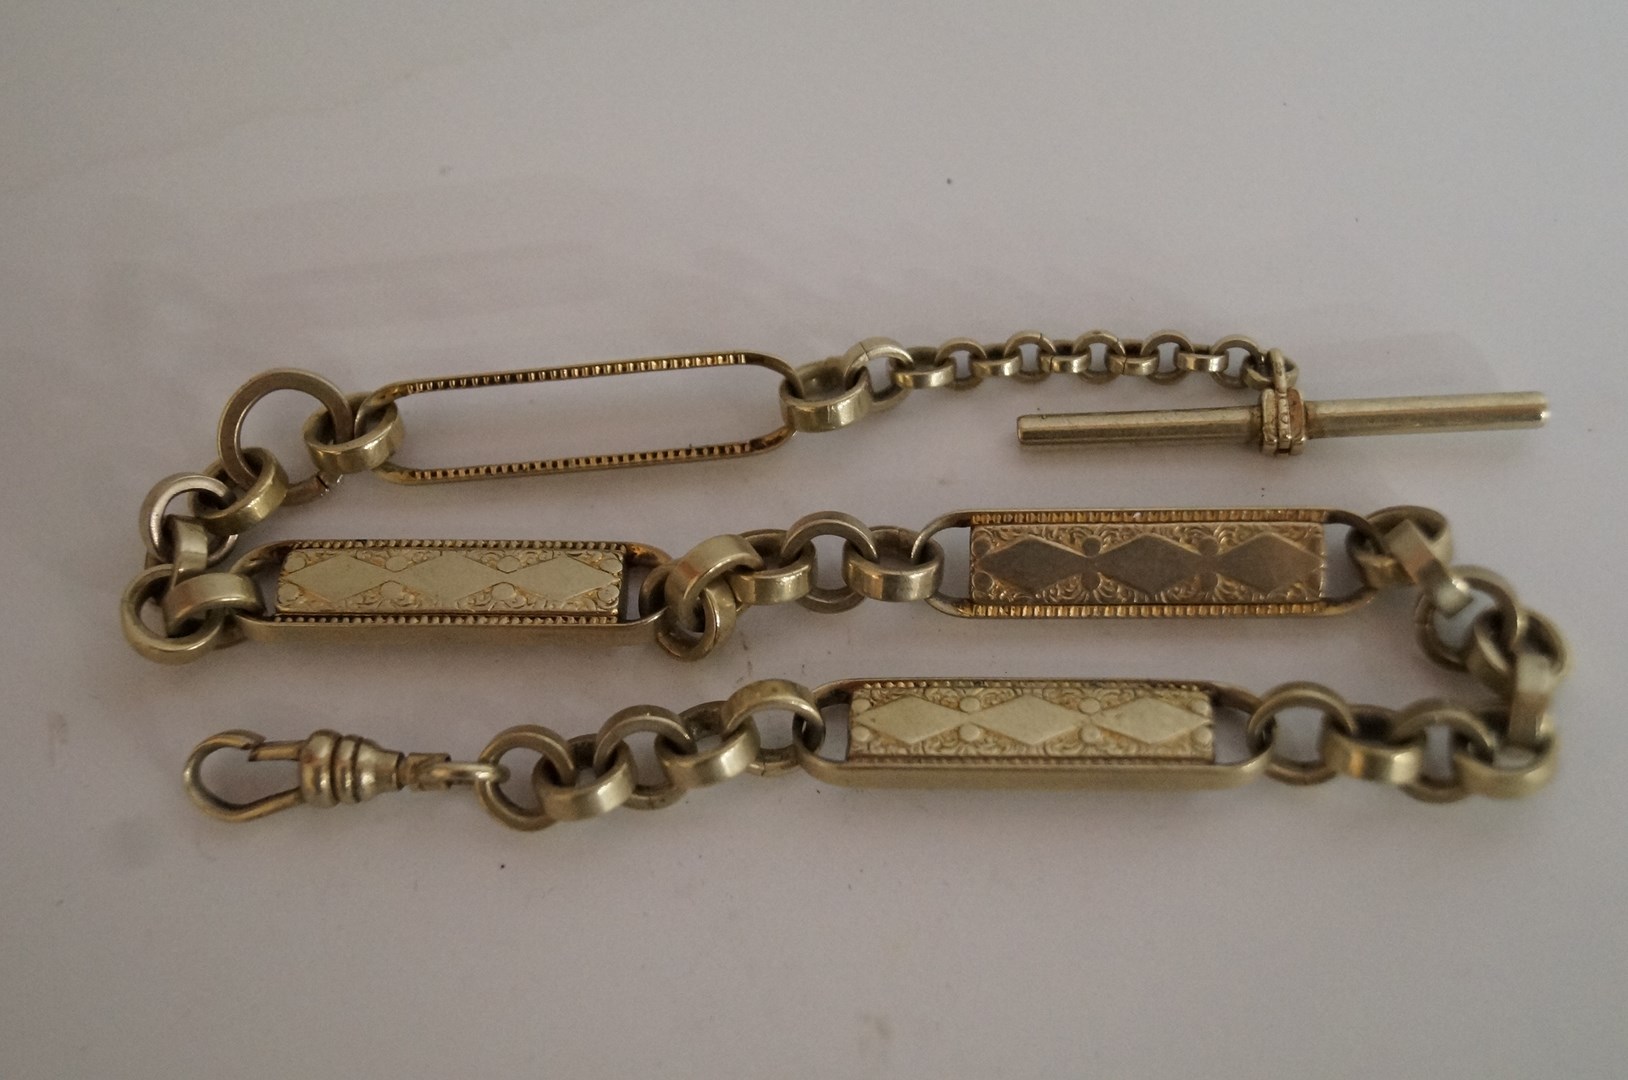 A metal watch chain of fancy links, approx 34.5cm long